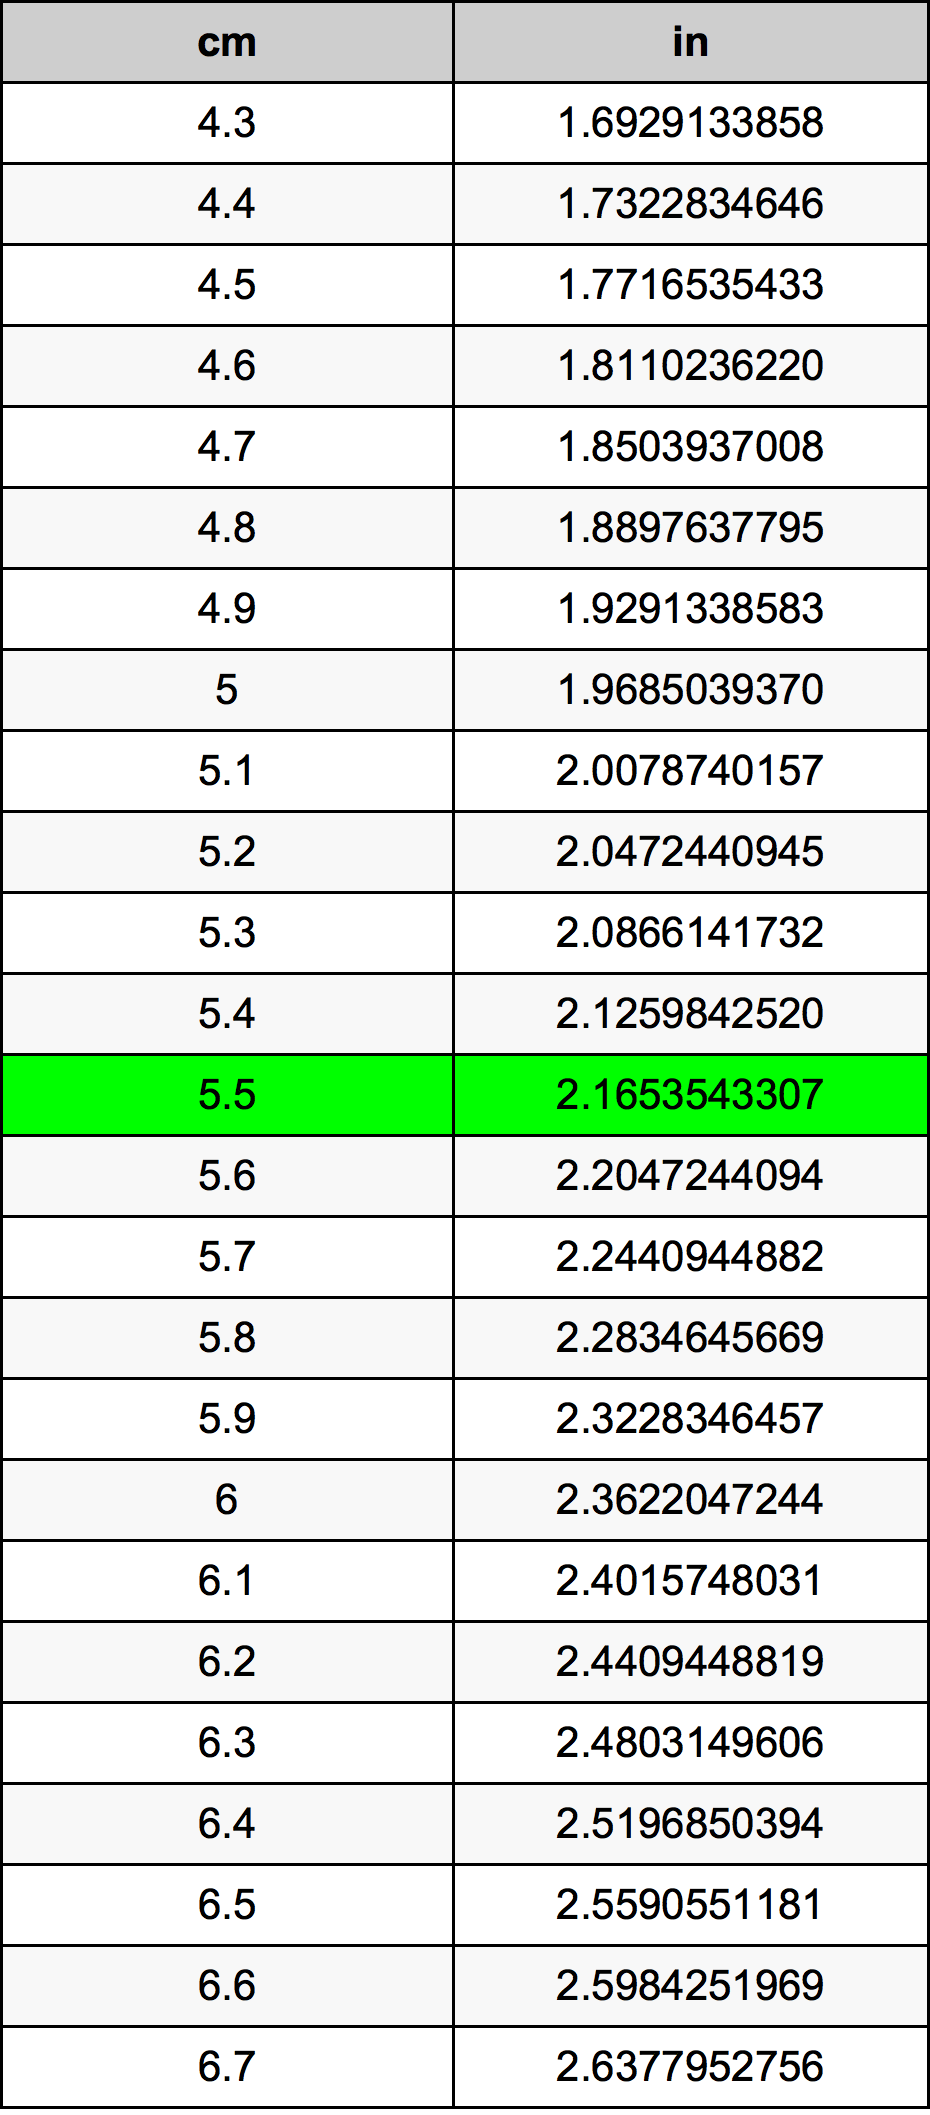 5.5 Centiméter átszámítási táblázat